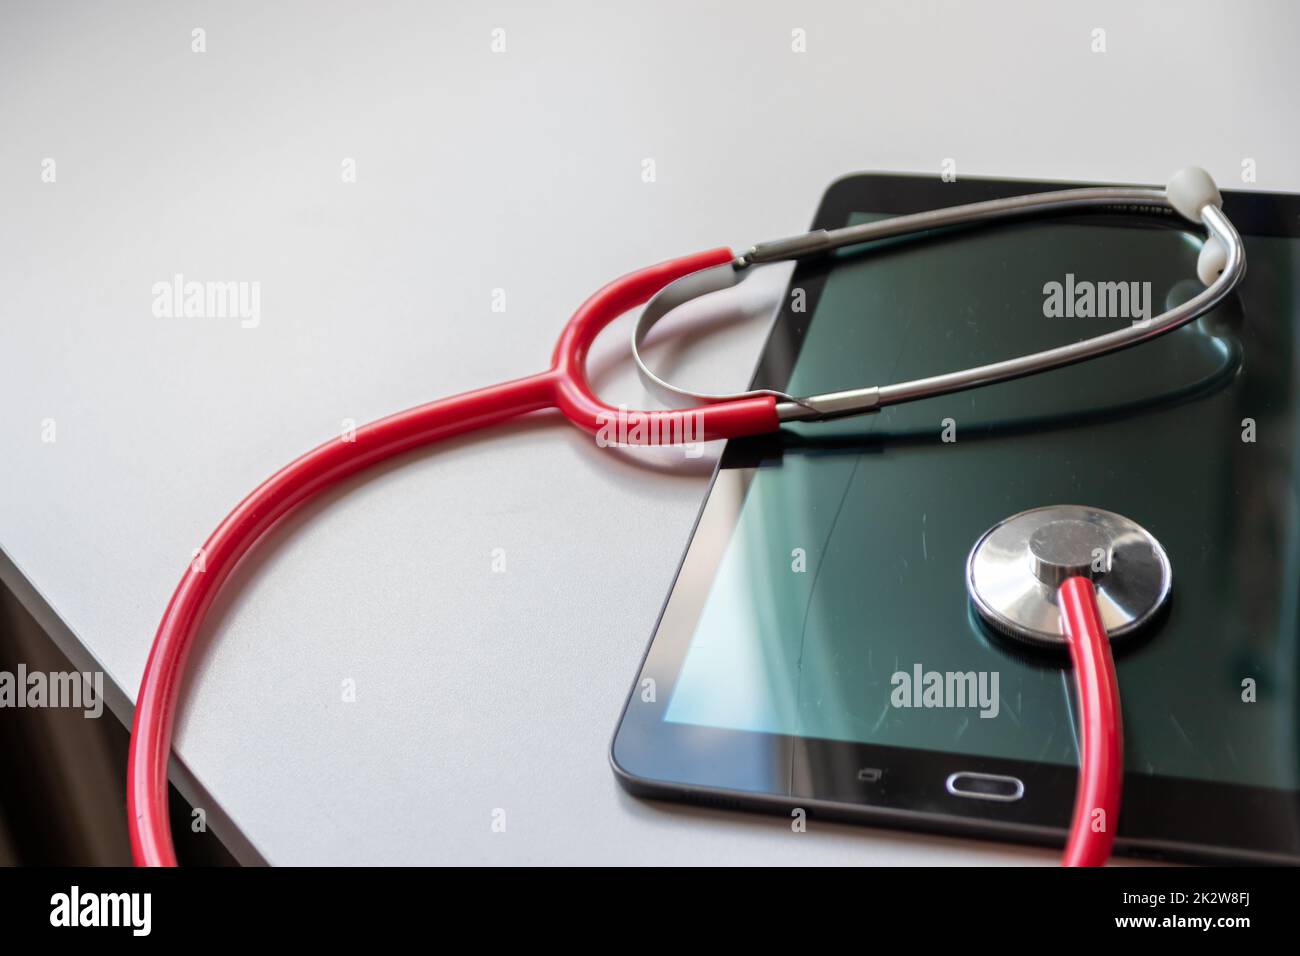 Le stéthoscope rouge sur tablette noire affiche les dossiers de santé et les dossiers médicaux numériques sur la sécurité des données dans le cloud pour les médecins numériques et le diagnostic de récupération numérique grâce à des équipements et technologies modernes Banque D'Images